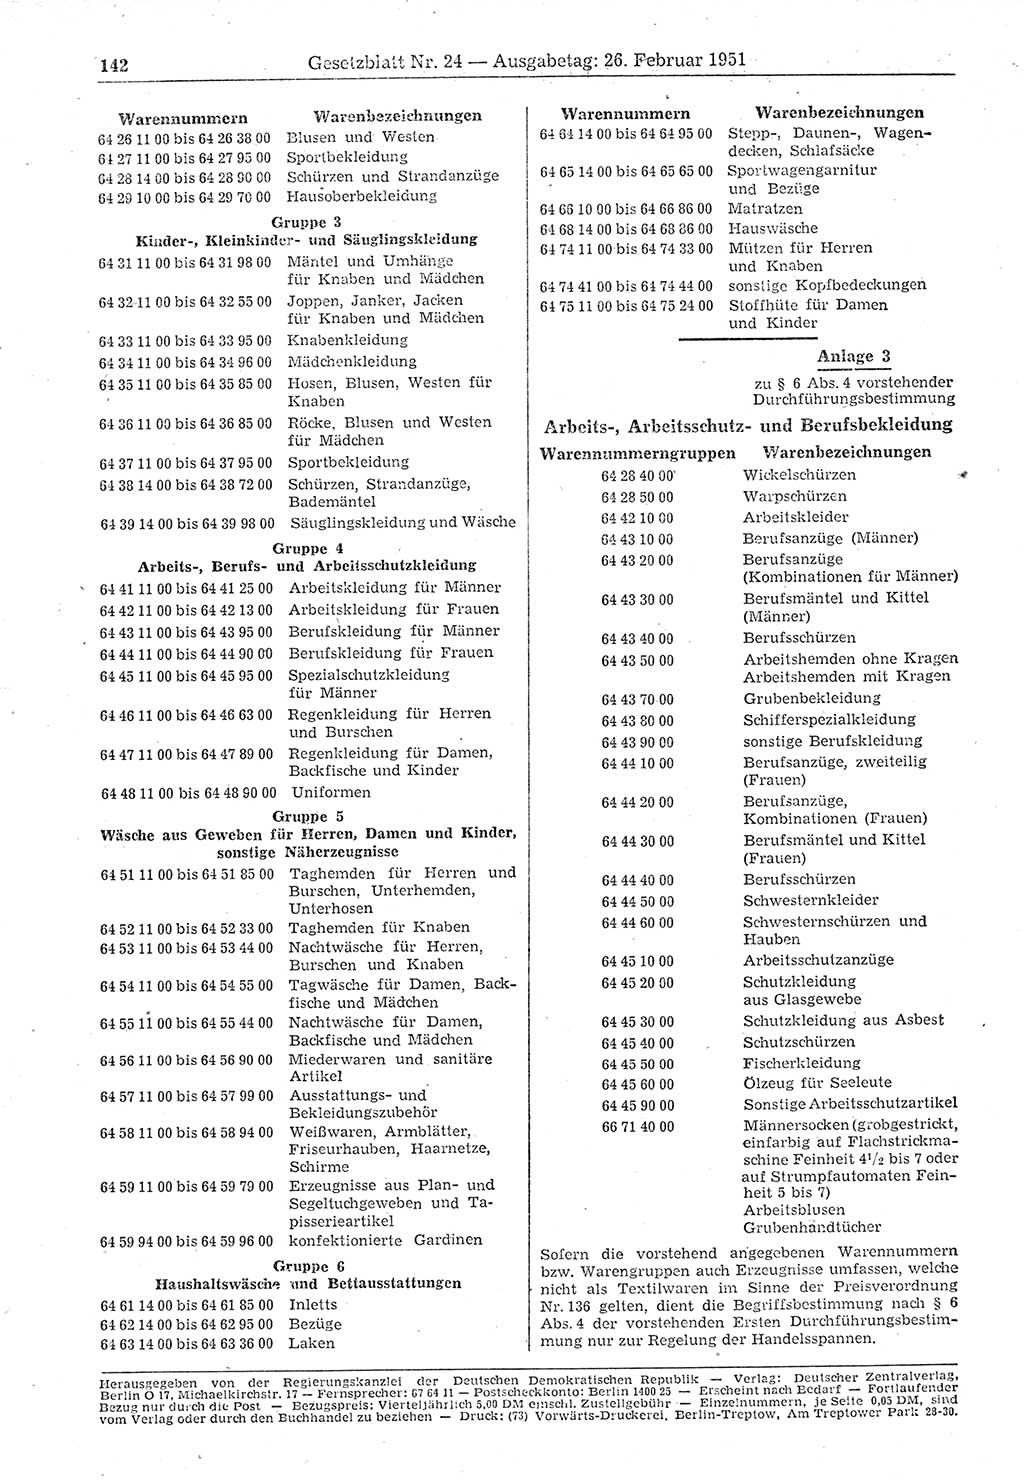 Gesetzblatt (GBl.) der Deutschen Demokratischen Republik (DDR) 1951, Seite 142 (GBl. DDR 1951, S. 142)